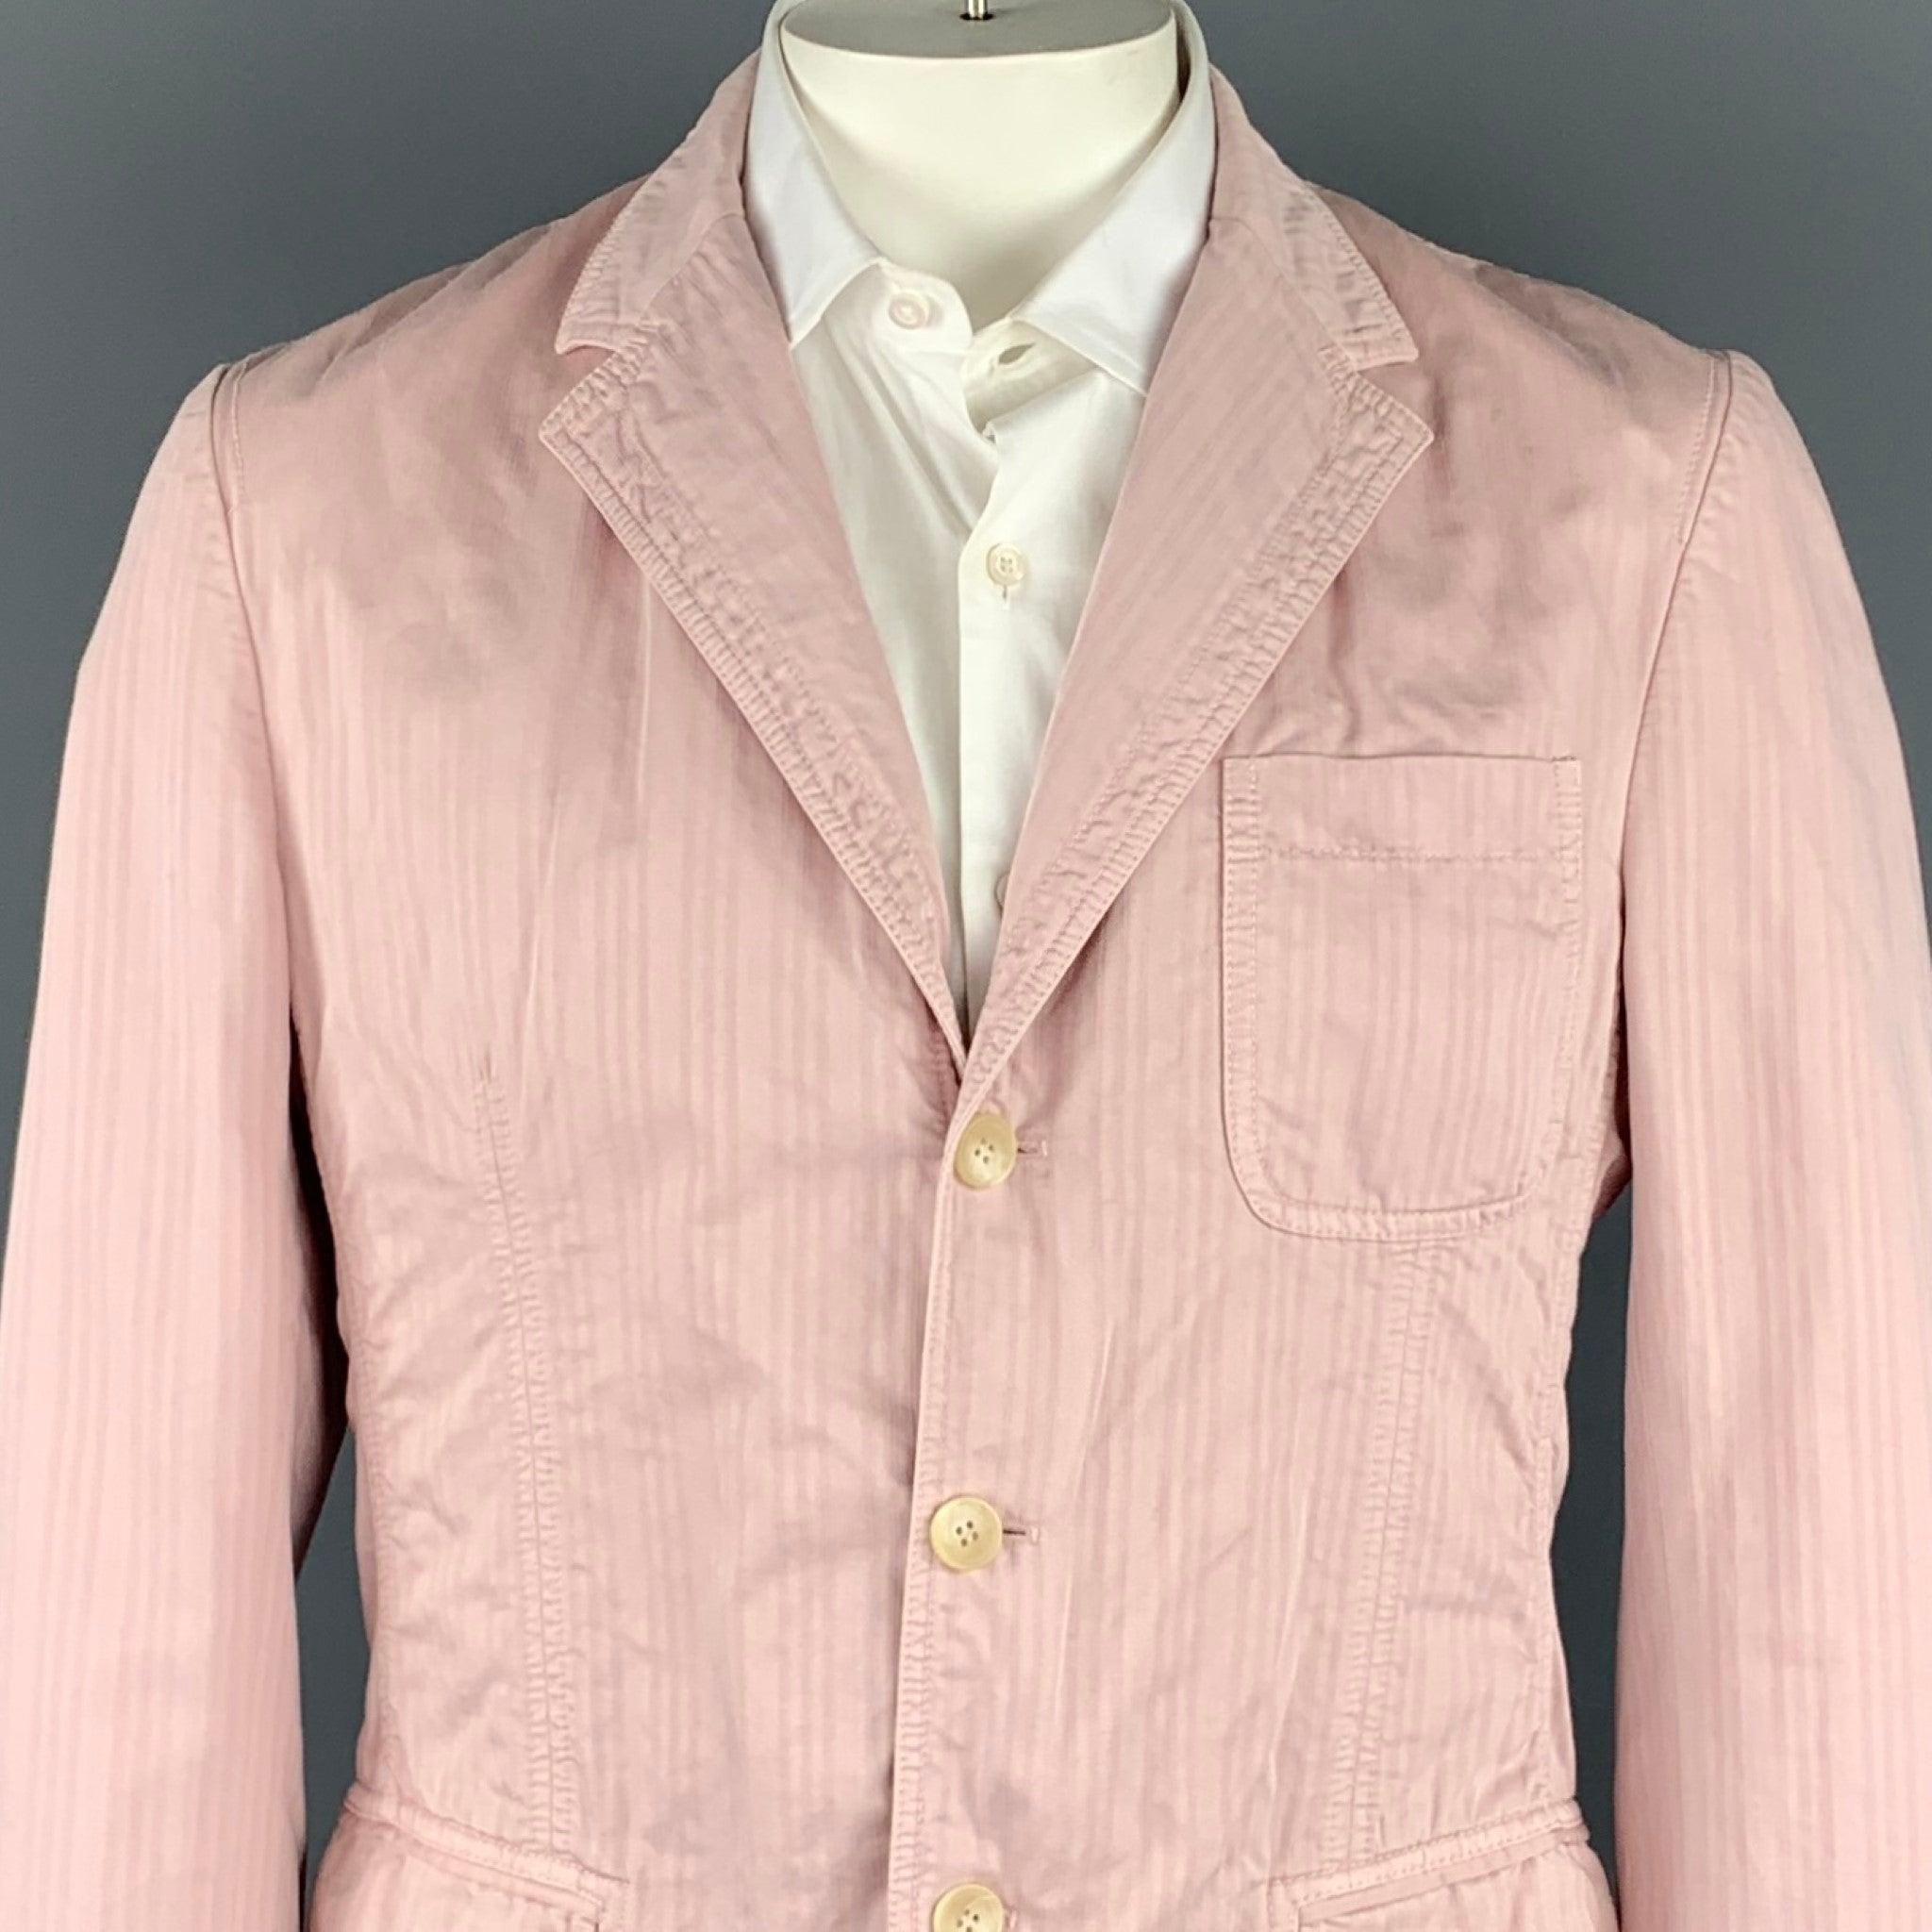 Le manteau sport D&G by DOLCE & GABBANA est en coton rayé rose et présente un revers échancré, des poches à rabat et une fermeture par boutons de serrage. Fabriqué en Roumanie.
Etat d'occasion. 

Marqué :   38/52 

Mesures : 
 
Épaule : 18 pouces 